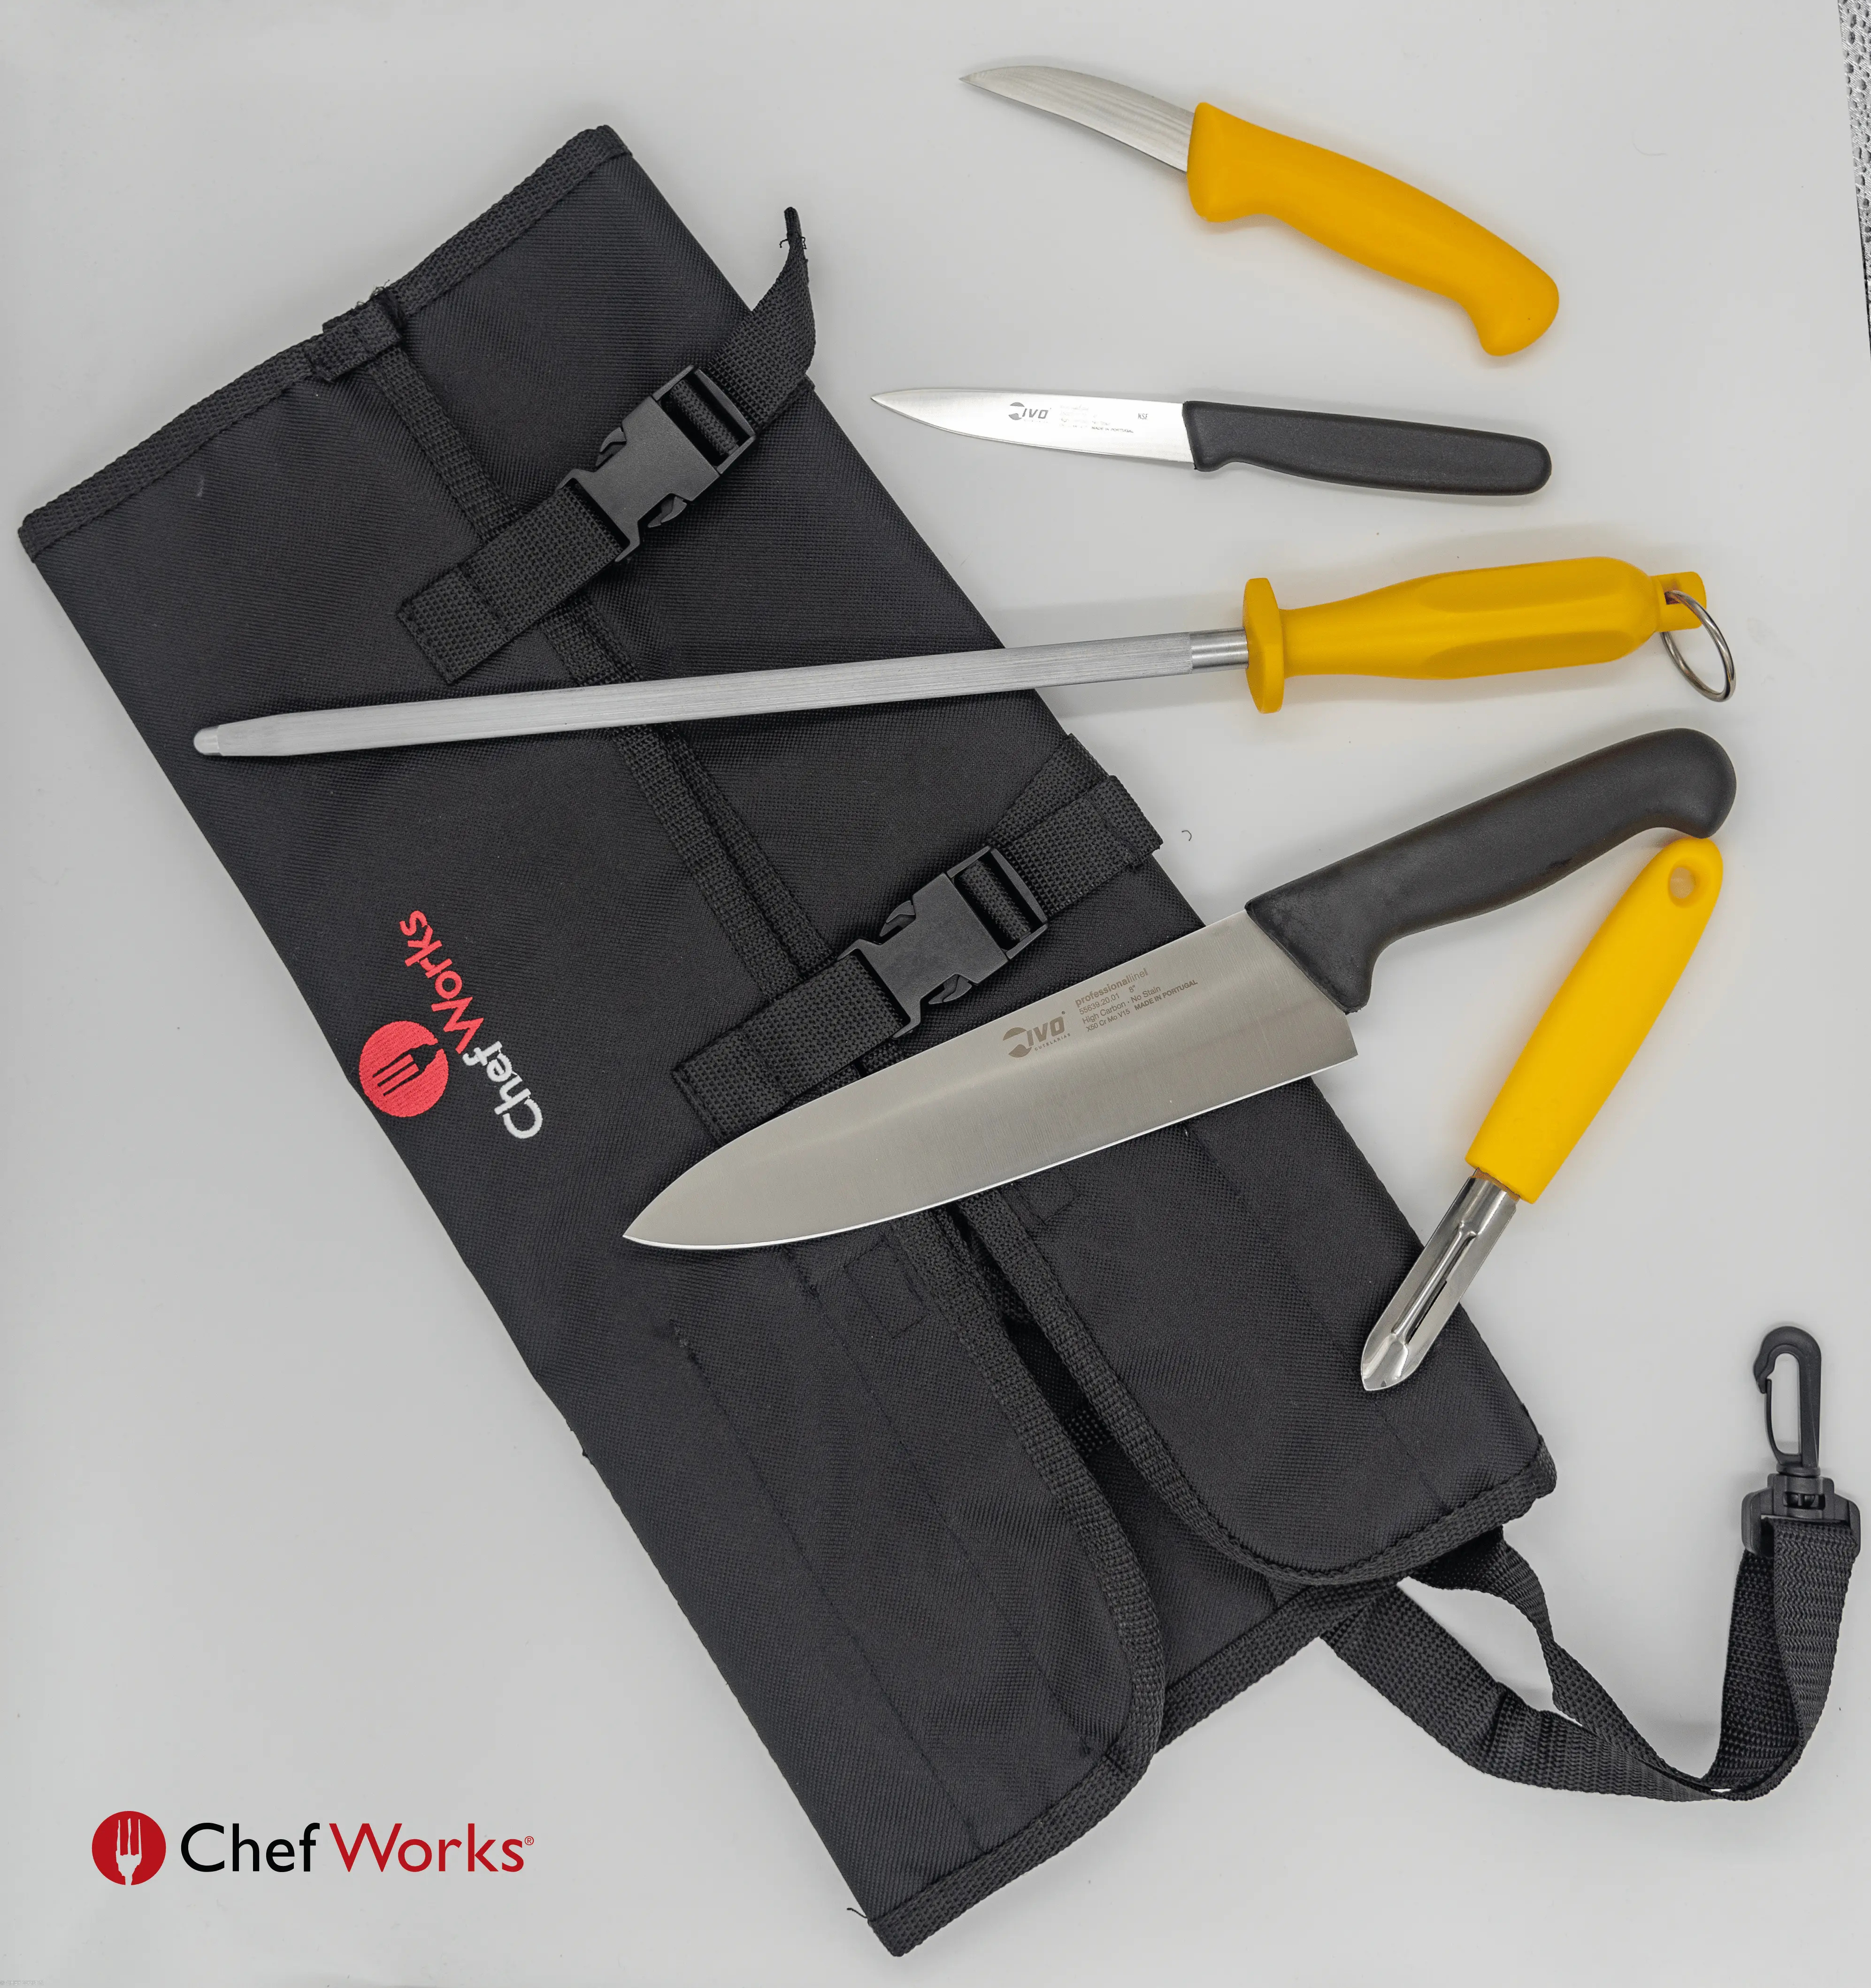 Porta cuchillos – Plaza Chef